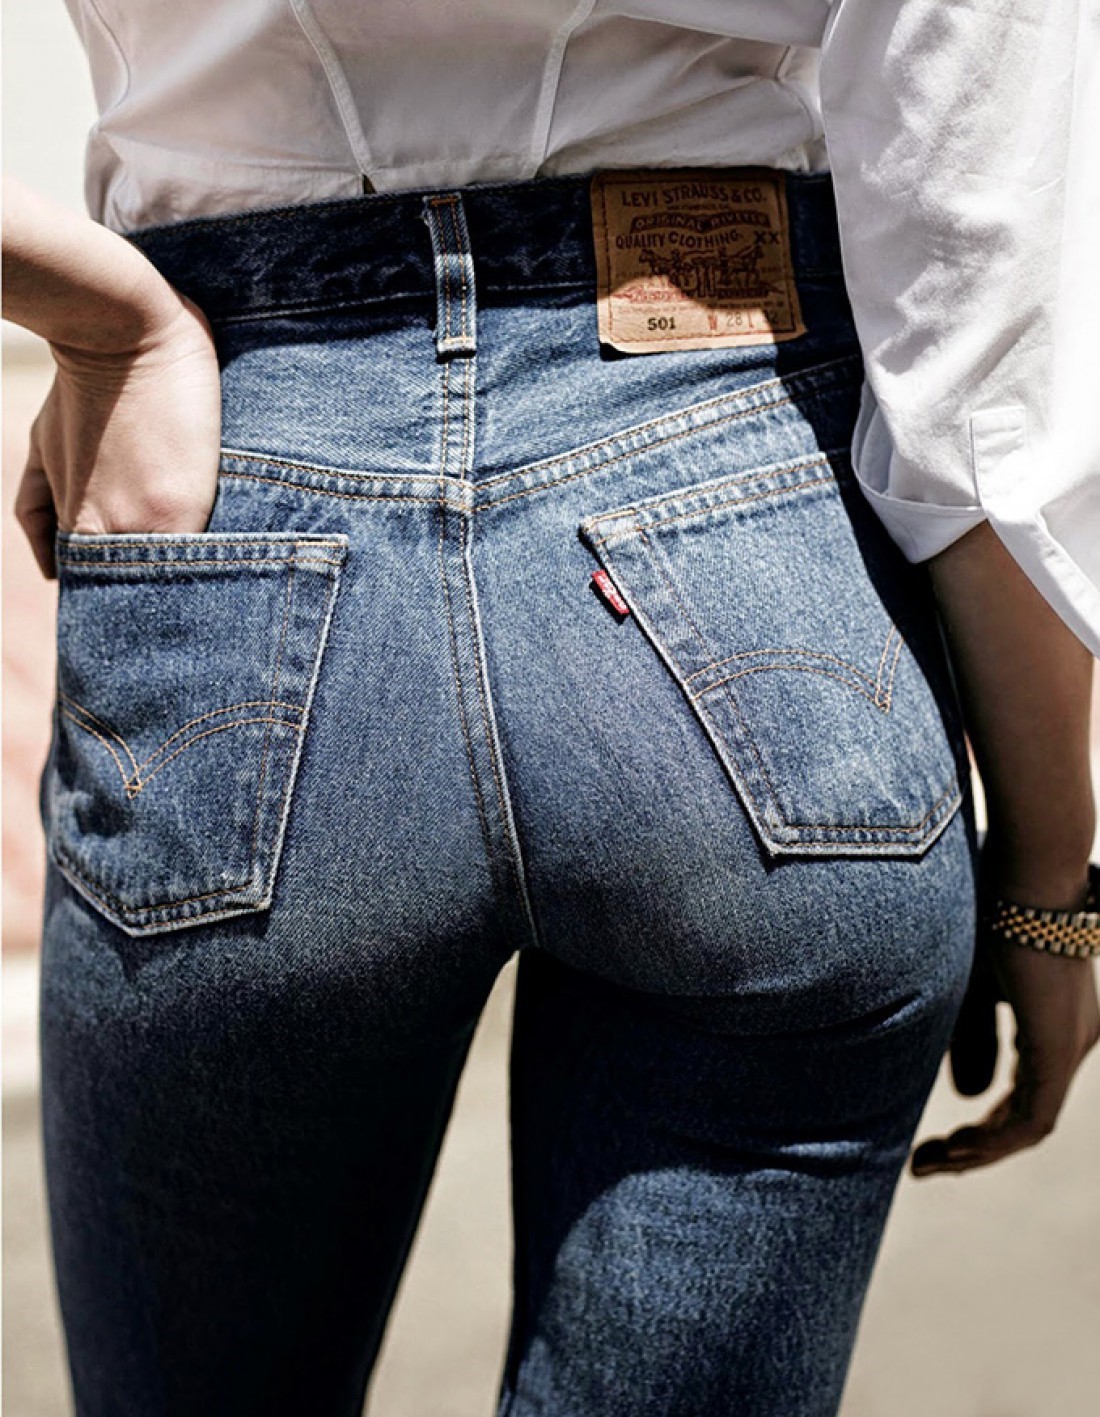 Как сохранить любимые джинсы